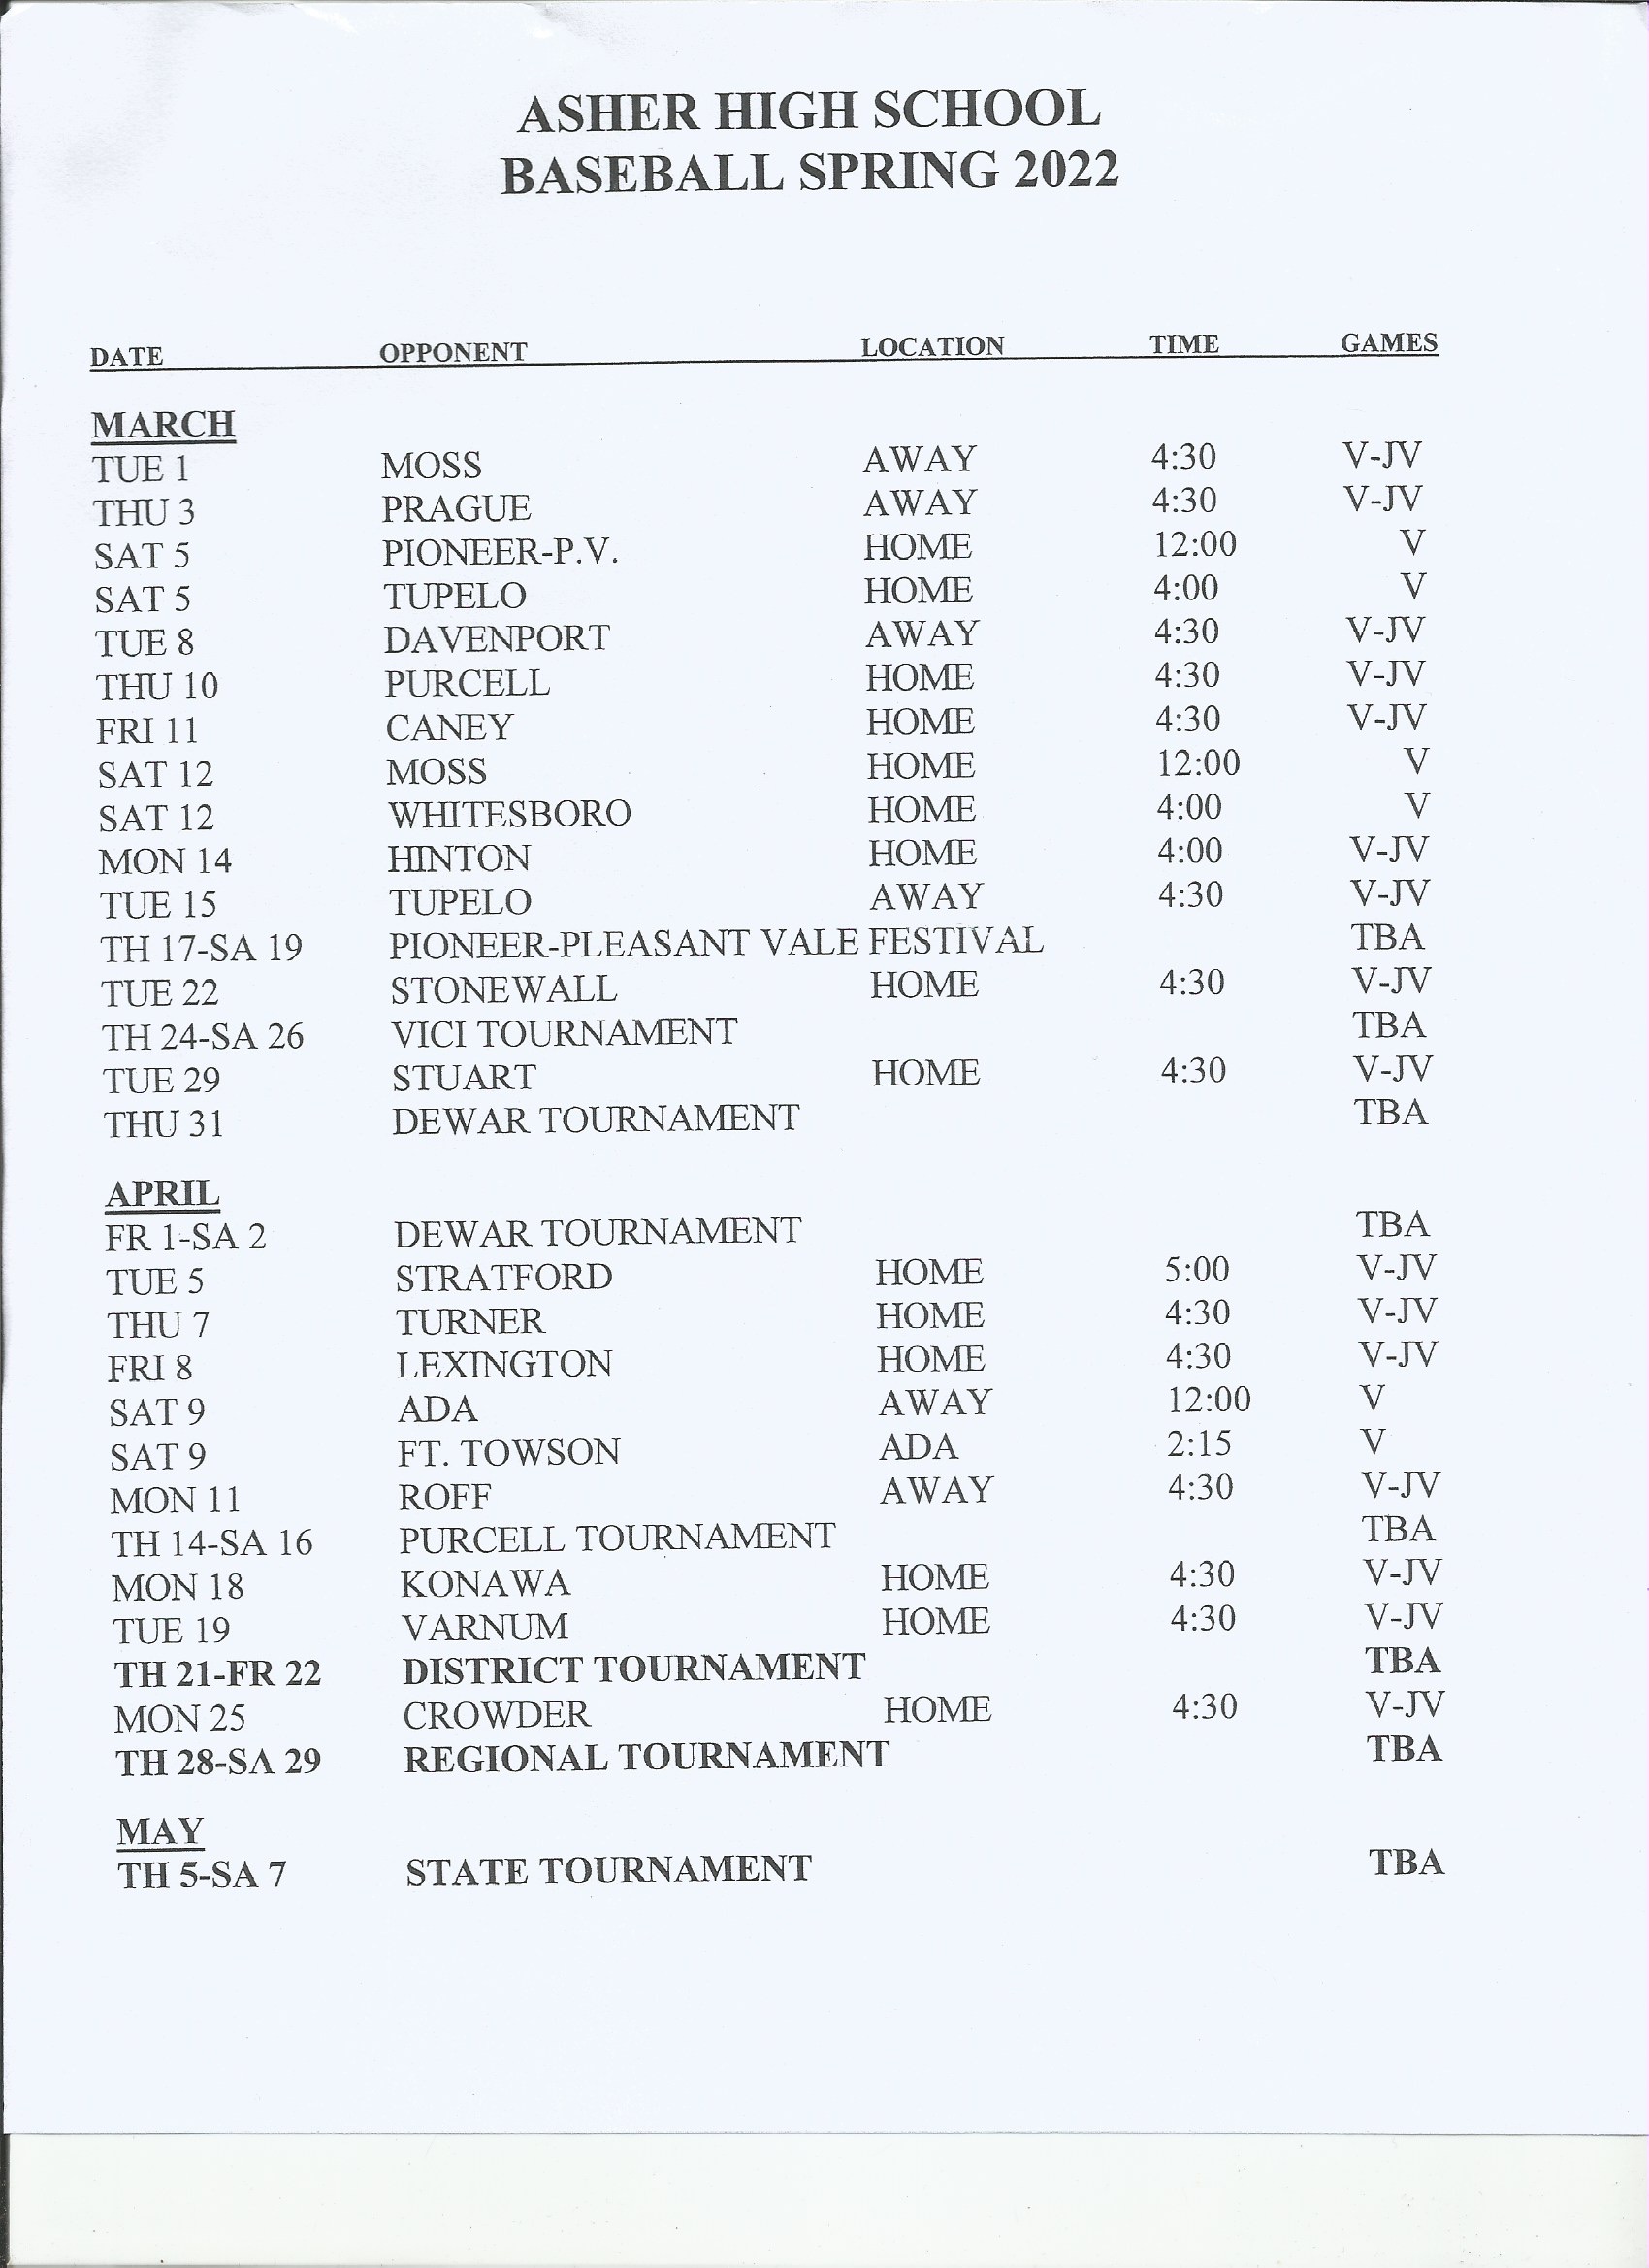 HS Baseball schedule